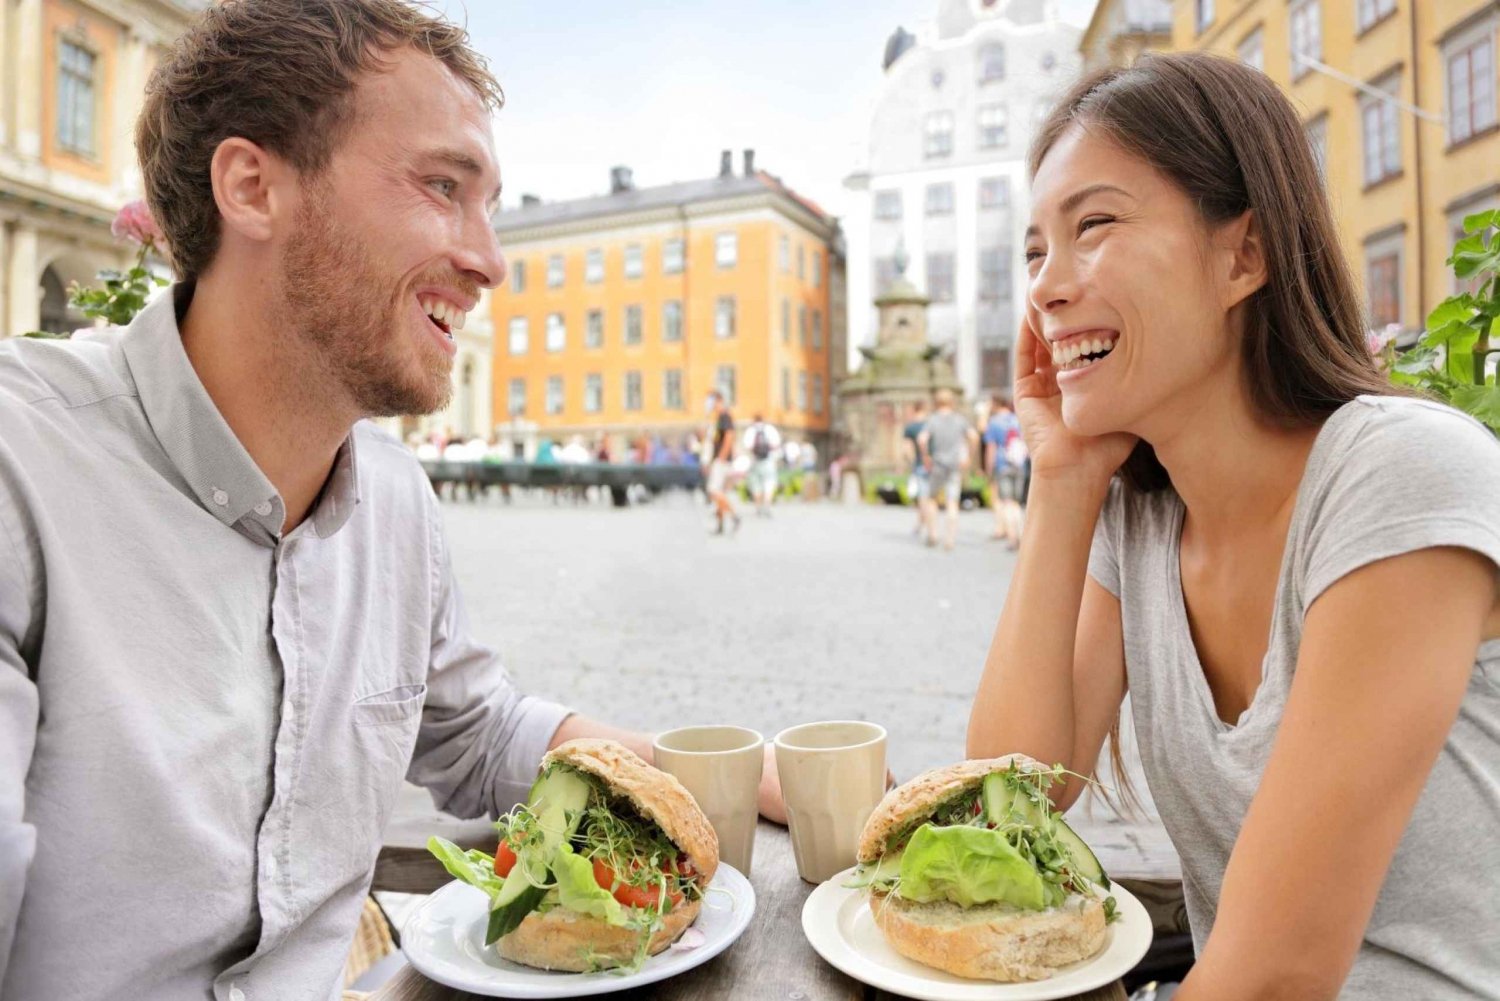 Svensk matprovning, restaurangrundtur i Gamla stan i Stockholm